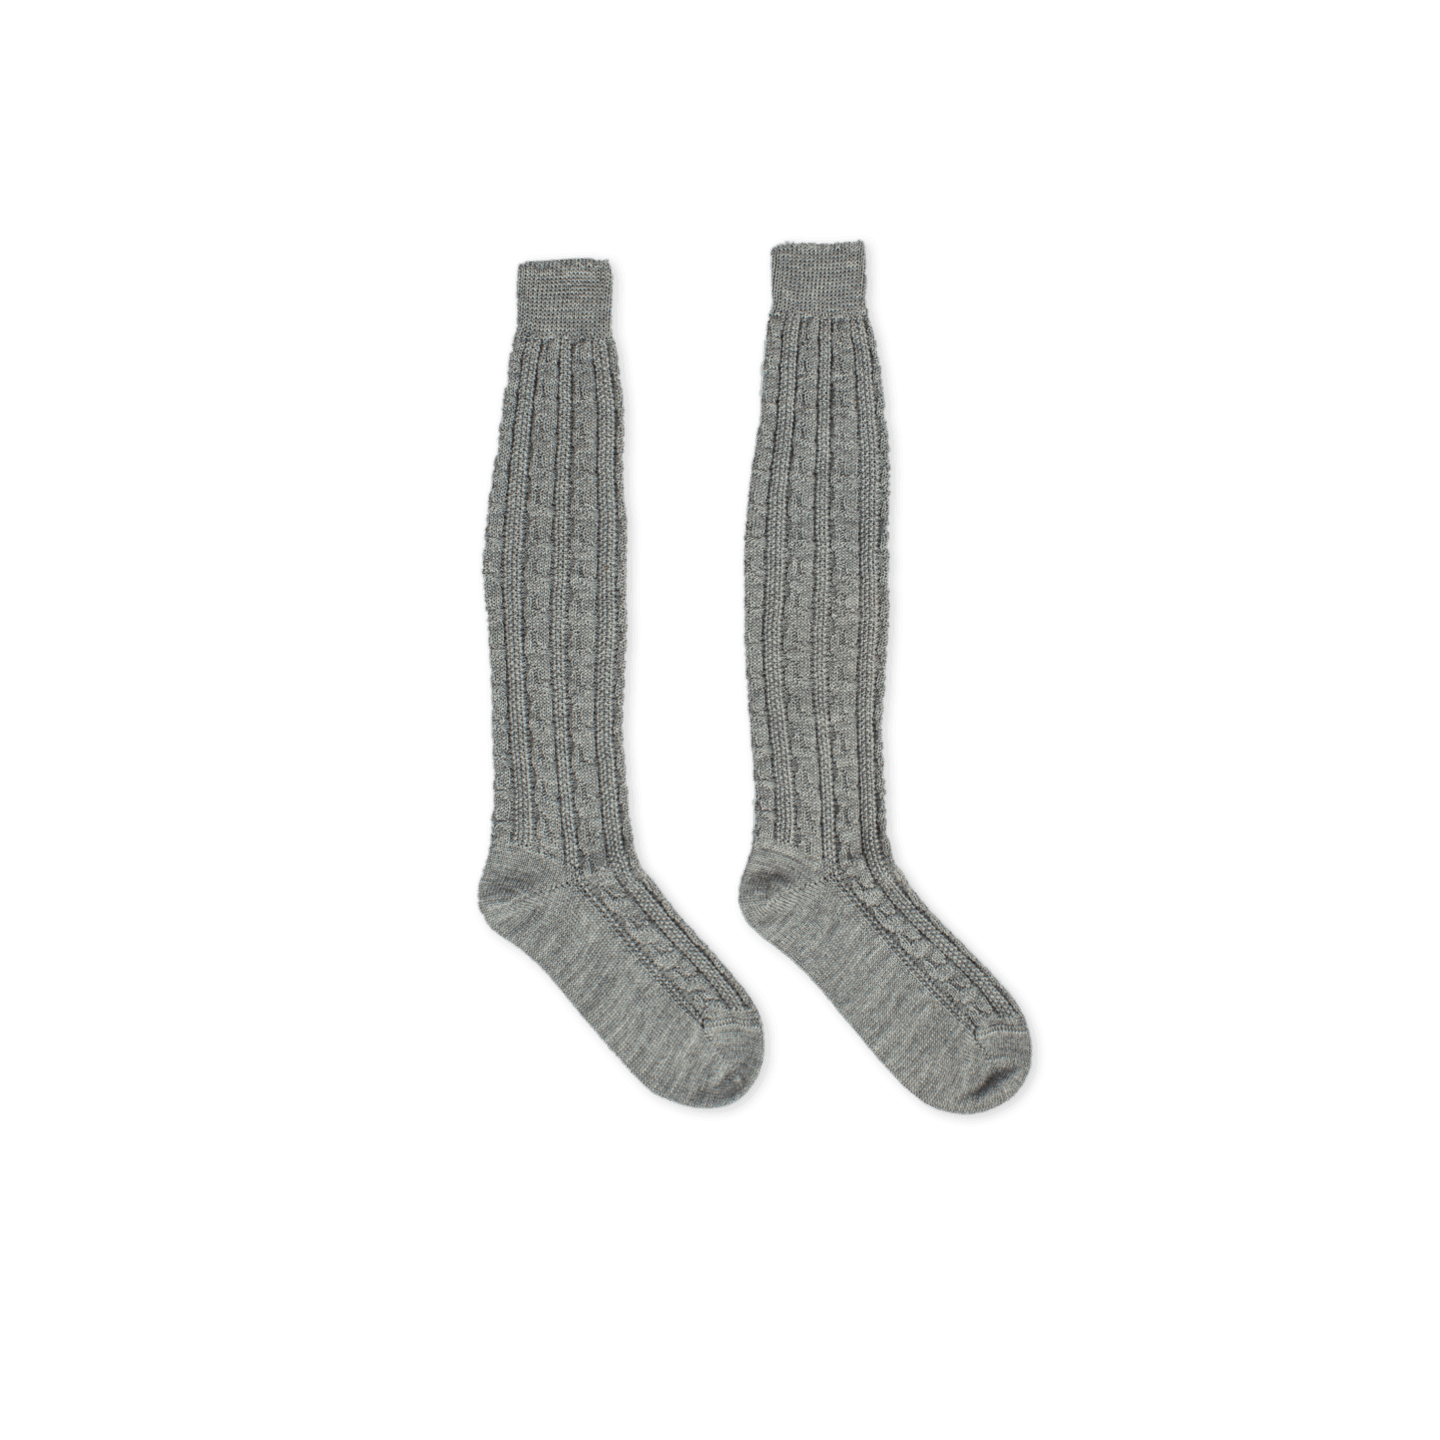 Strizi socken lang grau 2 - Strizi traditional socks long brown